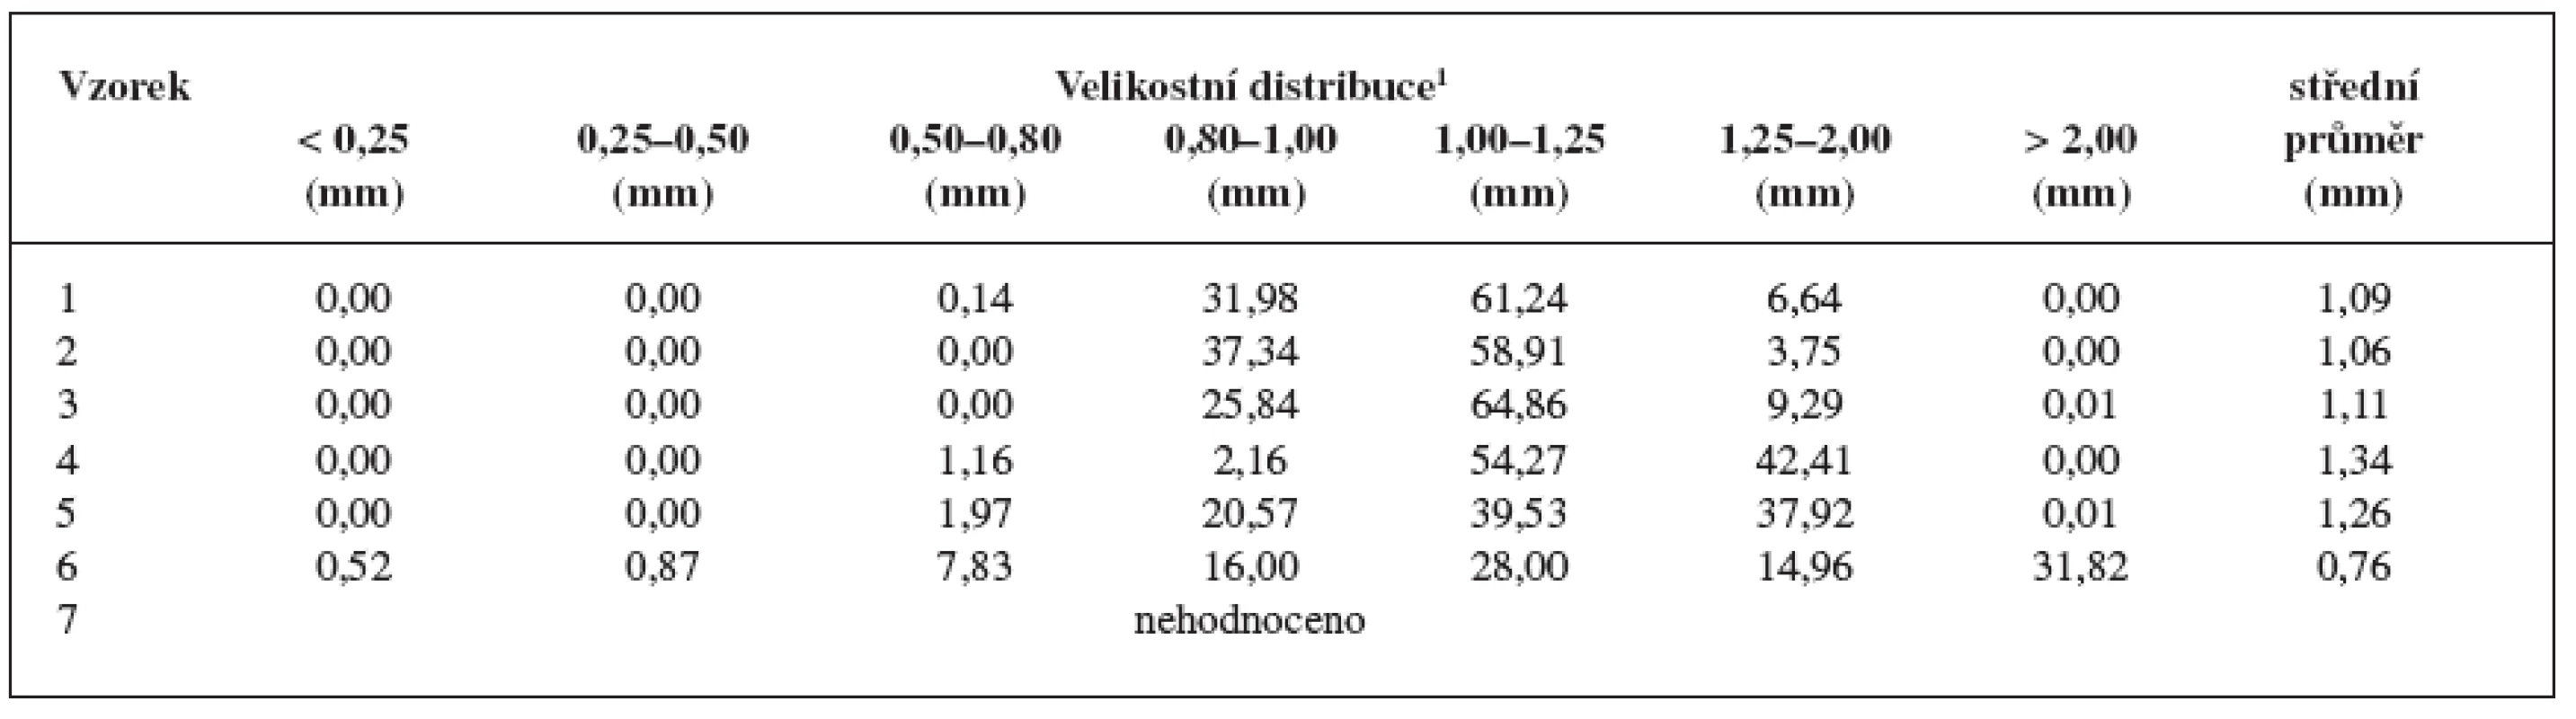 Velikosti pelet, jejich distribuce a hodnoty středního průměru pelet